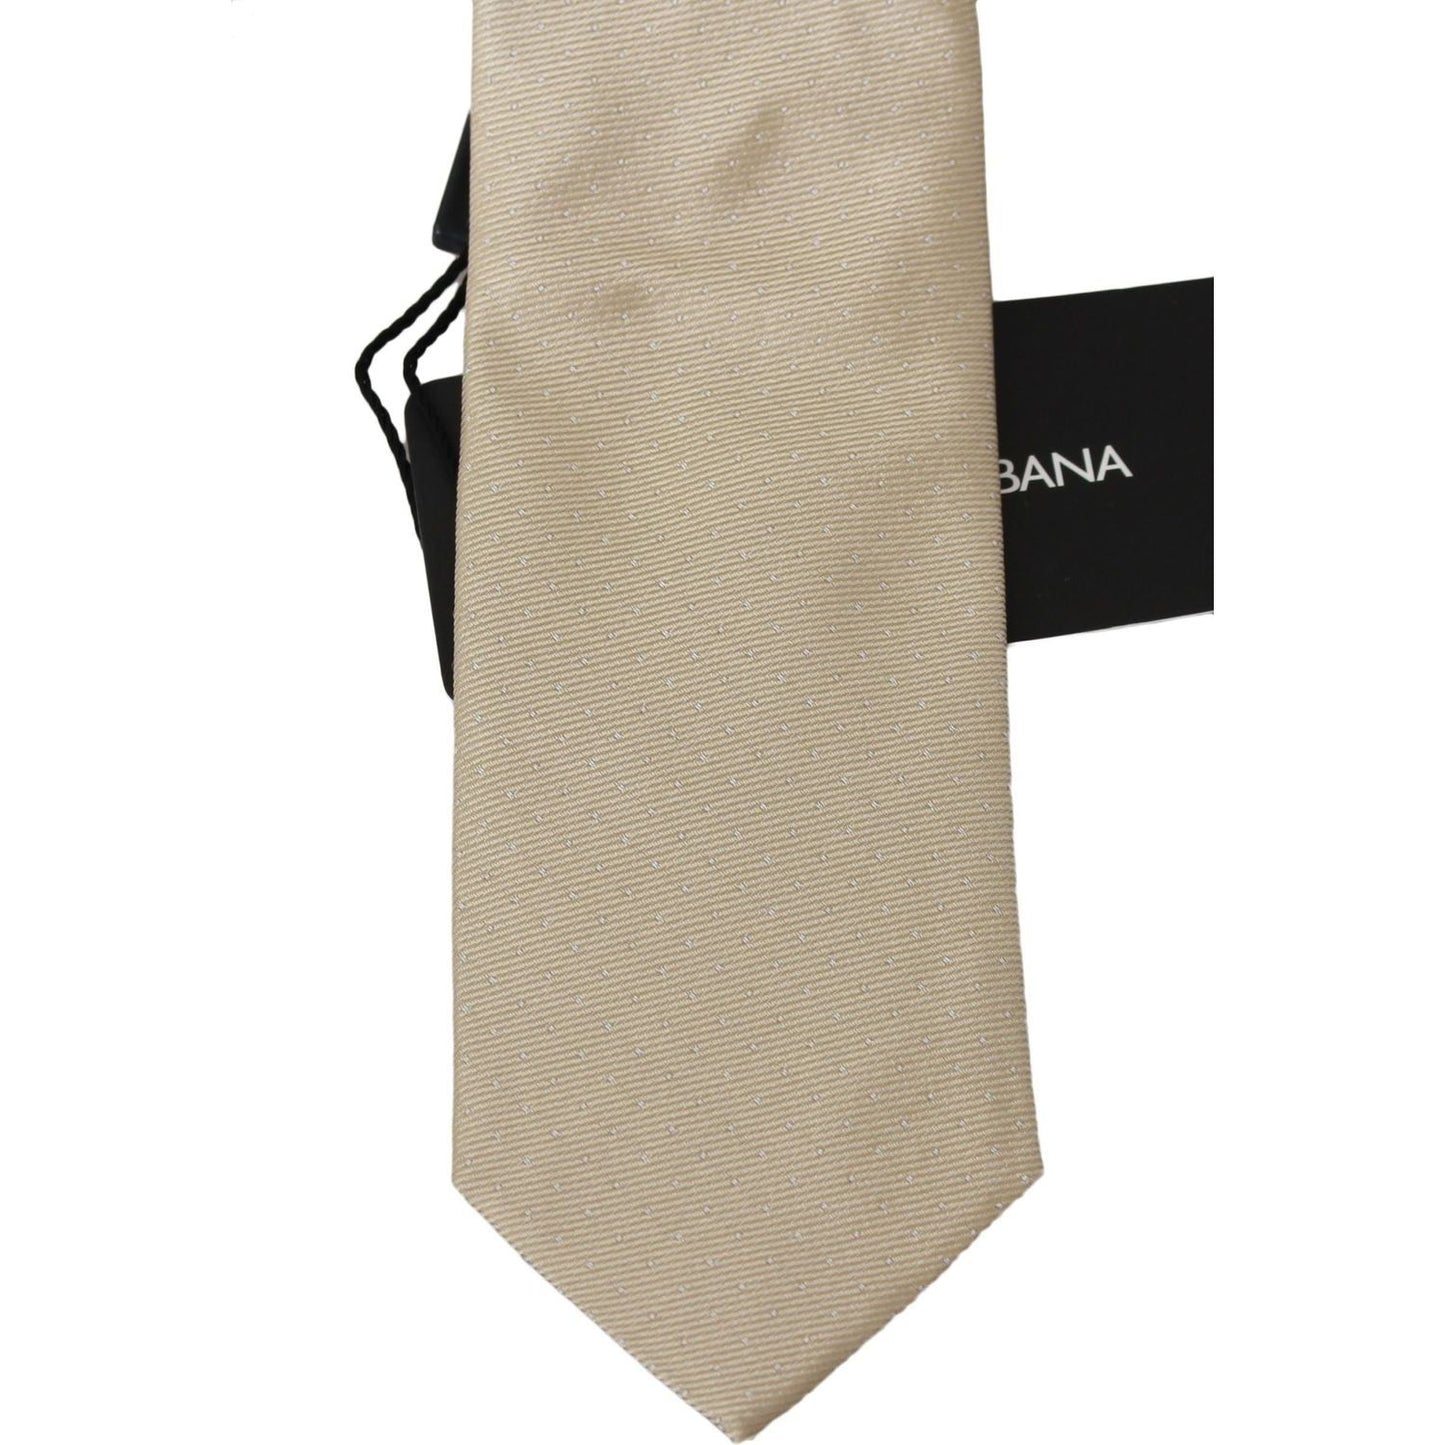 Dolce & Gabbana Elegant Light Brown Silk Necktie solid-light-brown-100-silk-classic-wide-necktie Necktie IMG_1525-scaled-c60d875e-967.jpg